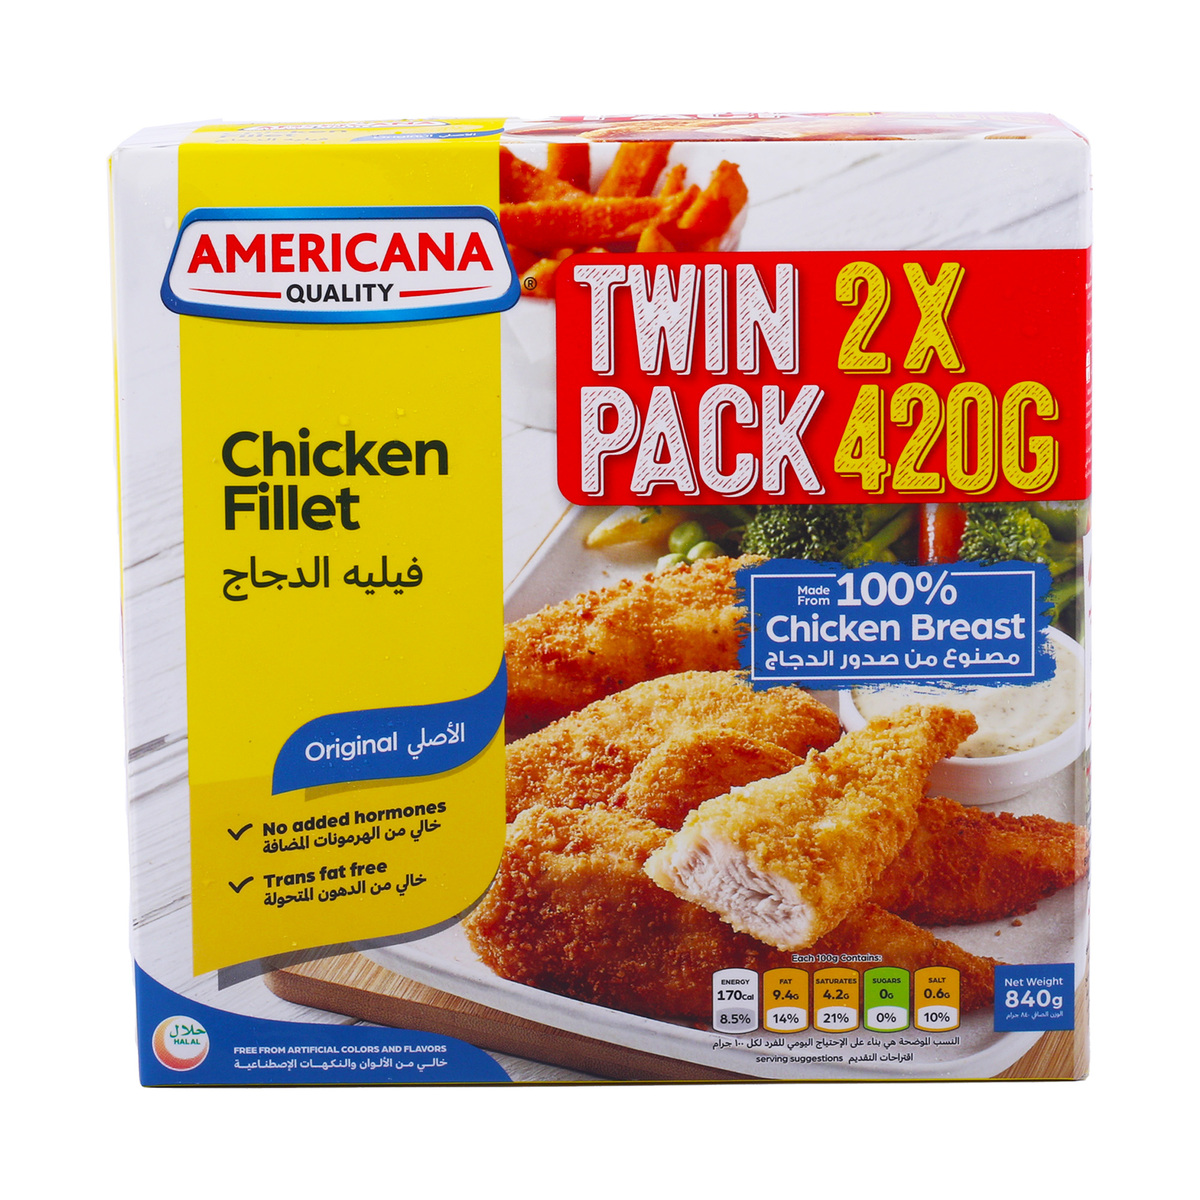 Buy Americana Chicken Fillet Value Pack 2 x 420 g Online at Best Price | Nuggets | Lulu UAE in UAE